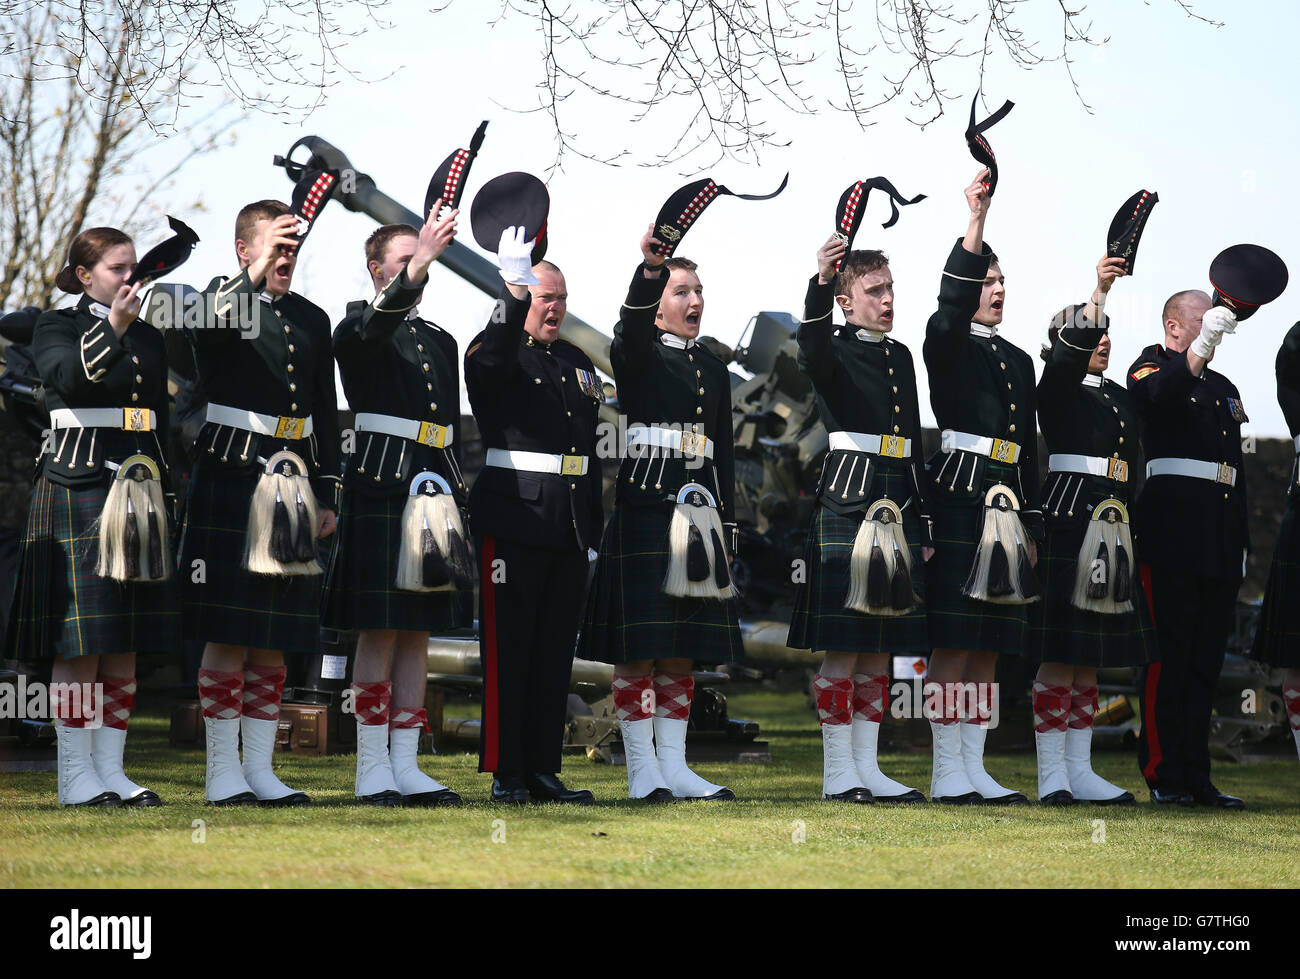 Des officiers du corps de formation des officiers des universités de Glasgow et Strathclyde et Tayforth (UOTC) saluent la reine Elizabeth II après avoir tiré un Royal Salute de 21 armes à feu au château de Stirling en l'honneur de son 89e anniversaire. Banque D'Images